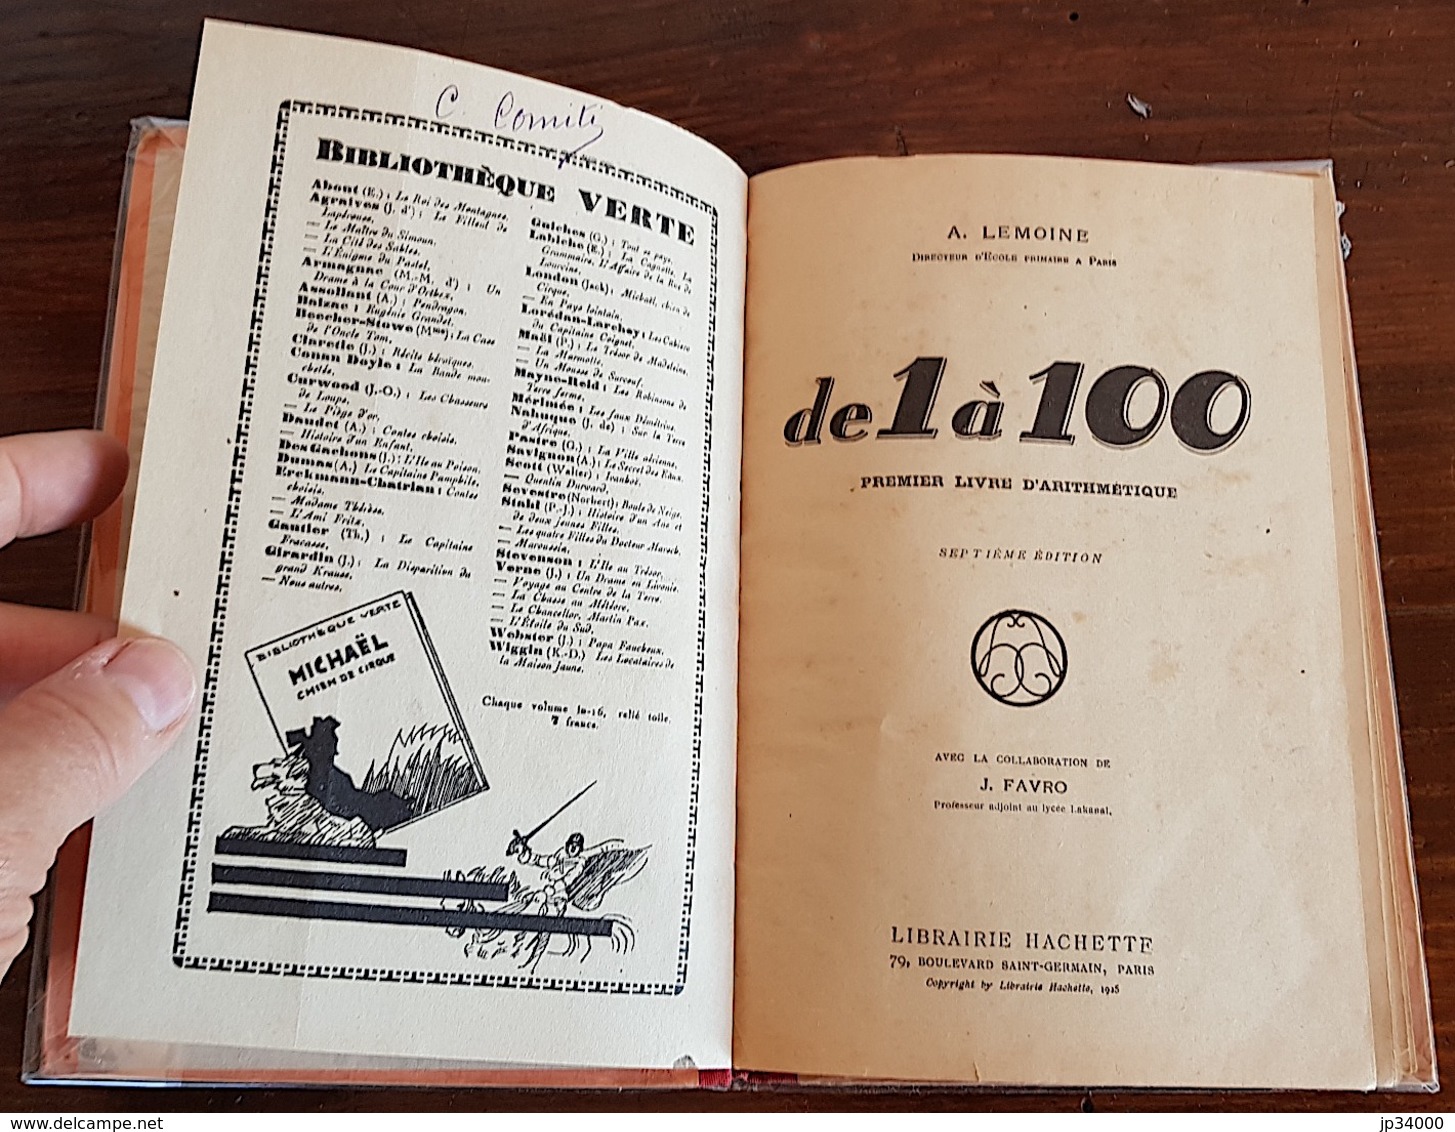 A. Lemoine - De 1 à 100 - Premier Livre D'Arithmétique - Librairie Hachette - (1931) Bel Etat - 6-12 Years Old